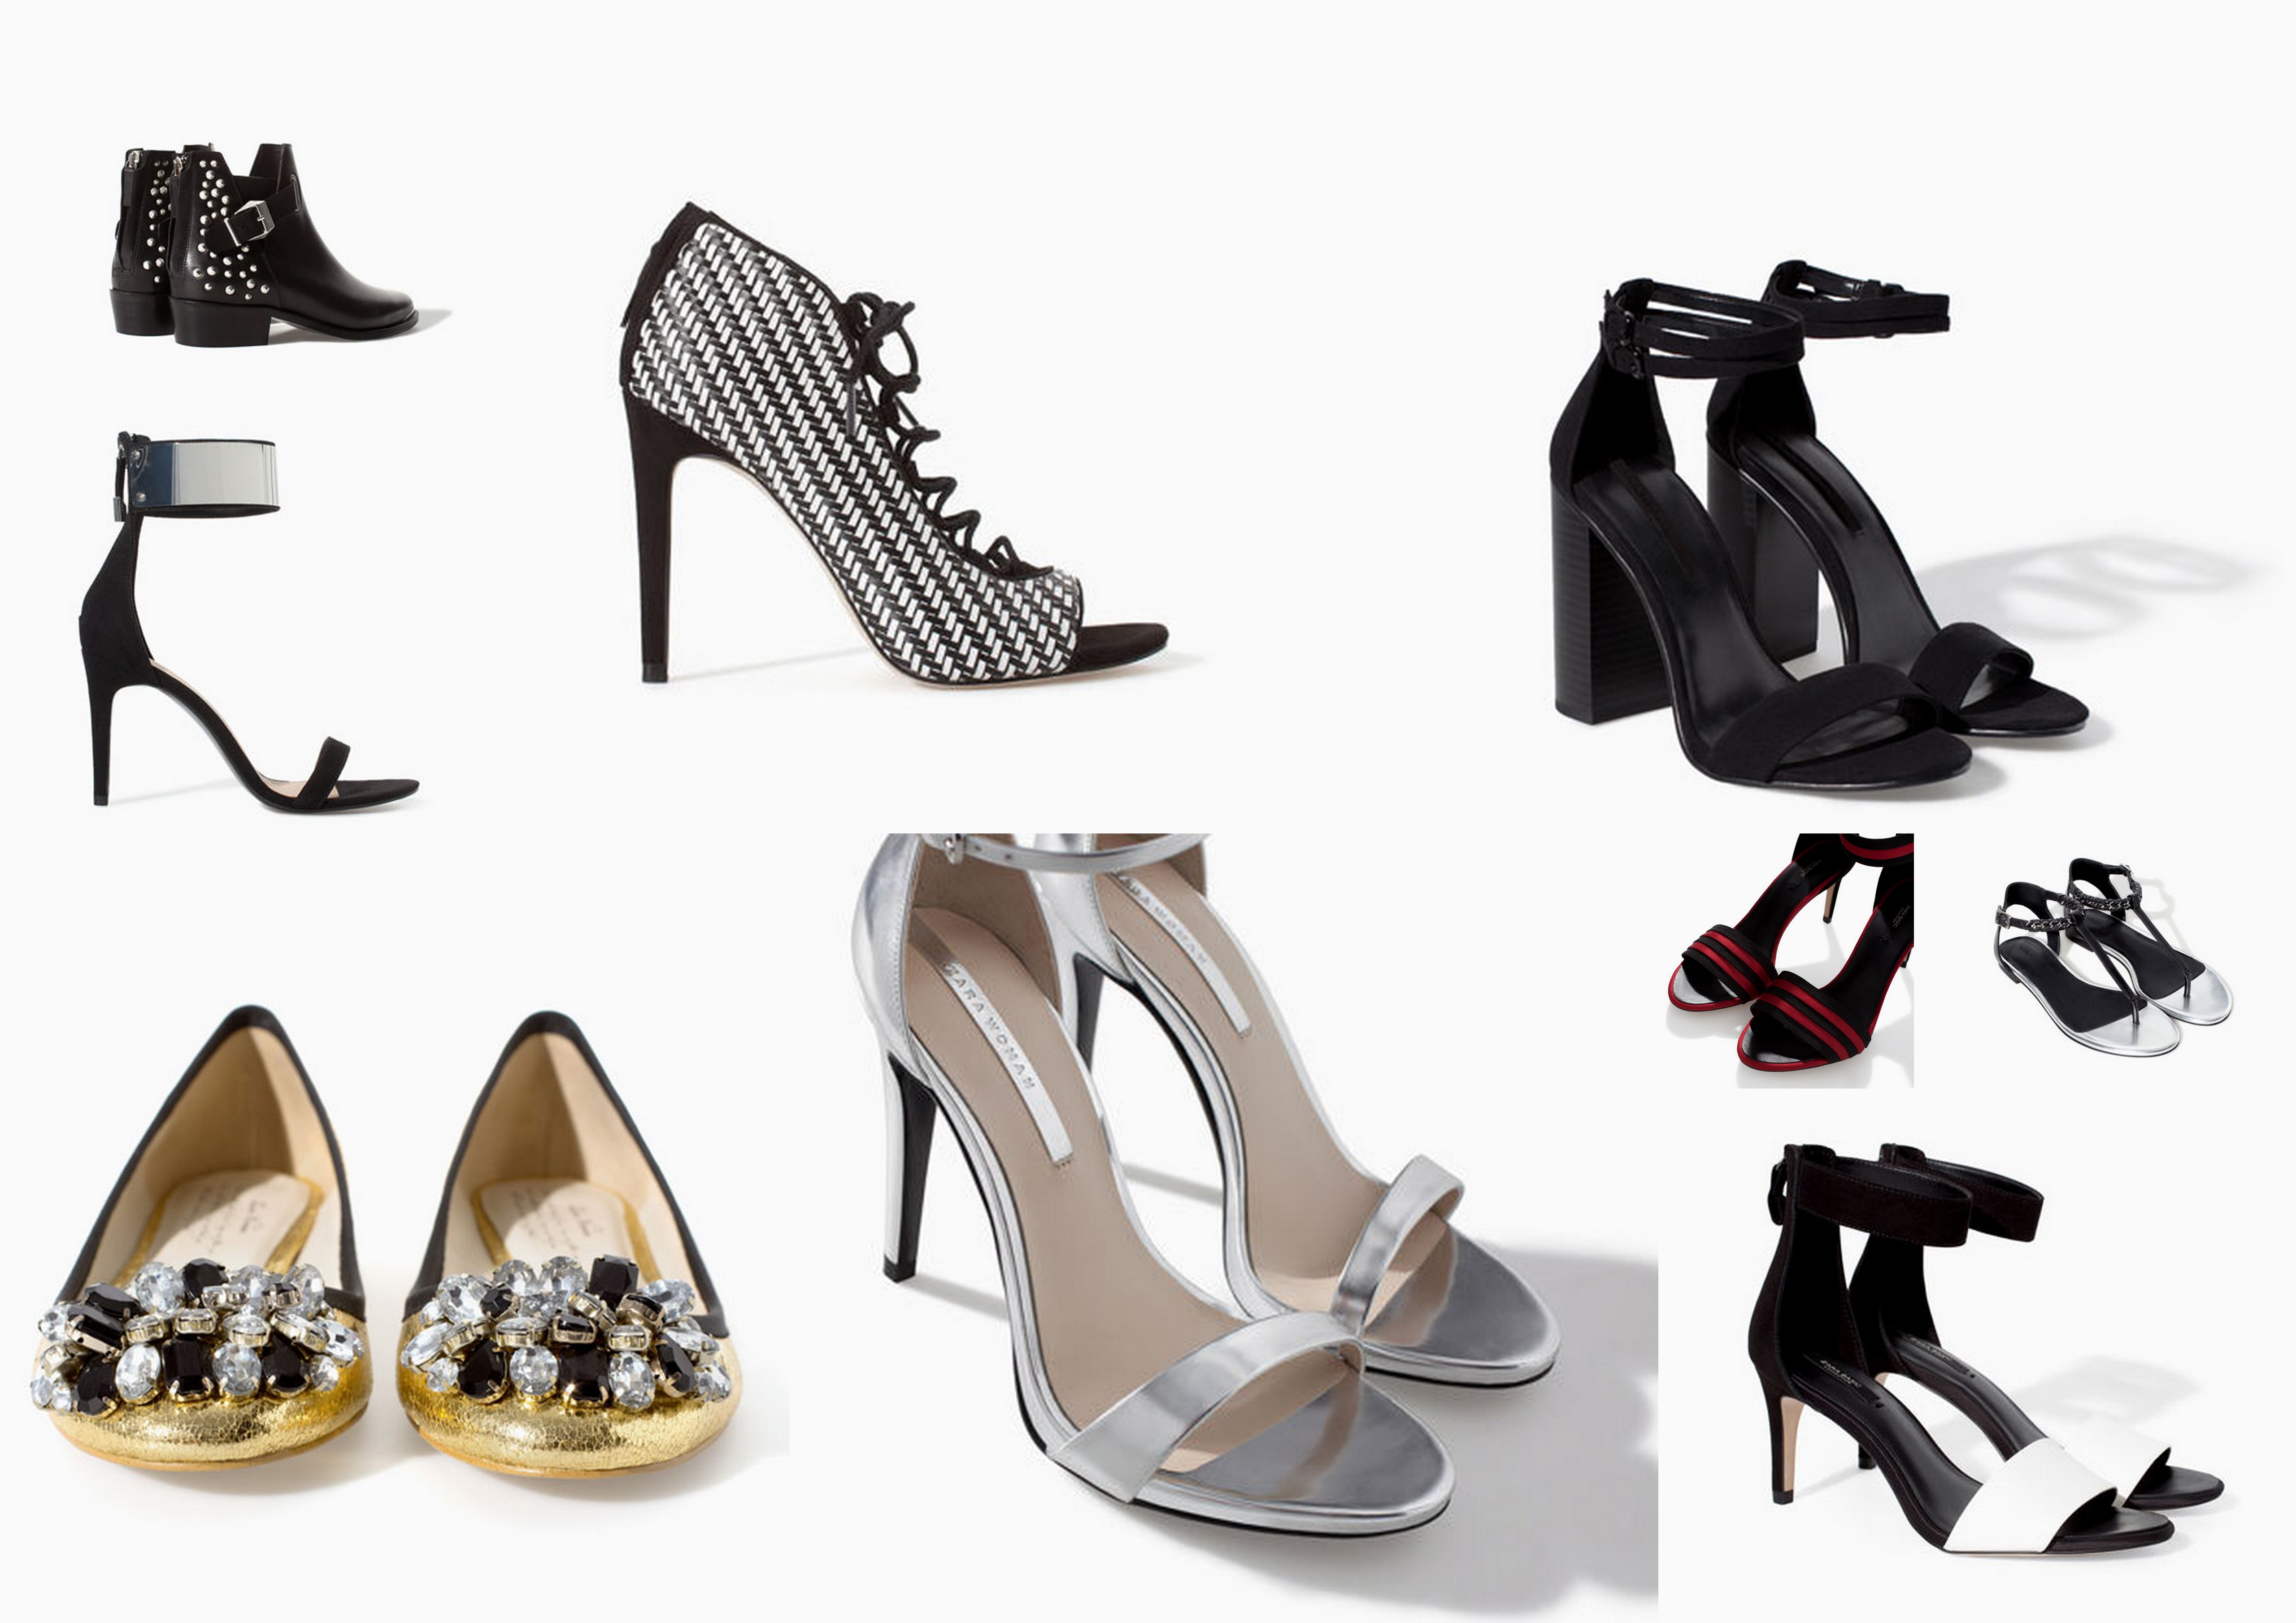 Zara spring collection 2014: shoes | Suzan